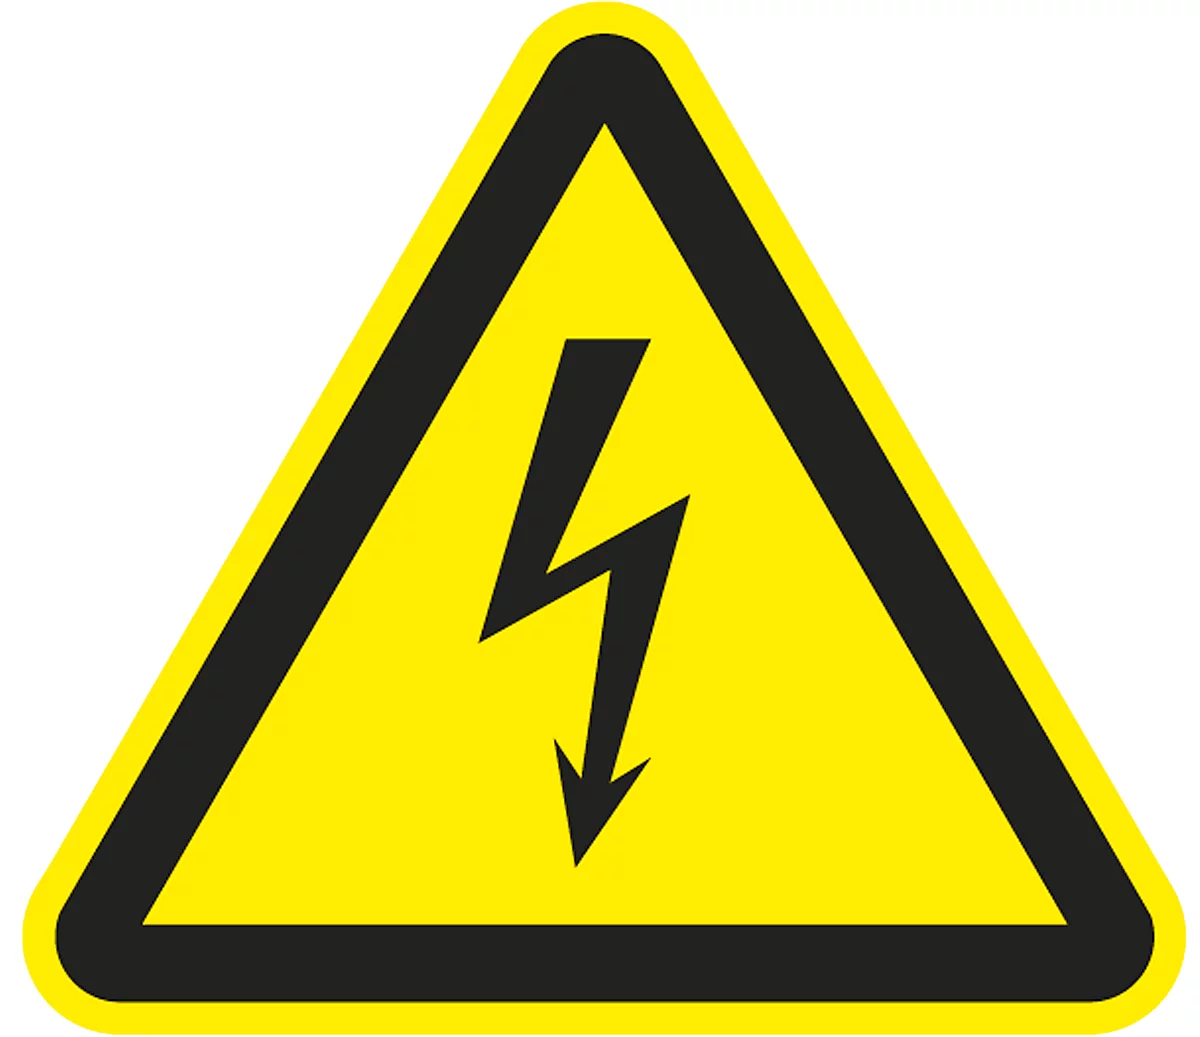 Signal d'avertissement « Mise en garde contre les risques d'électrocution », film